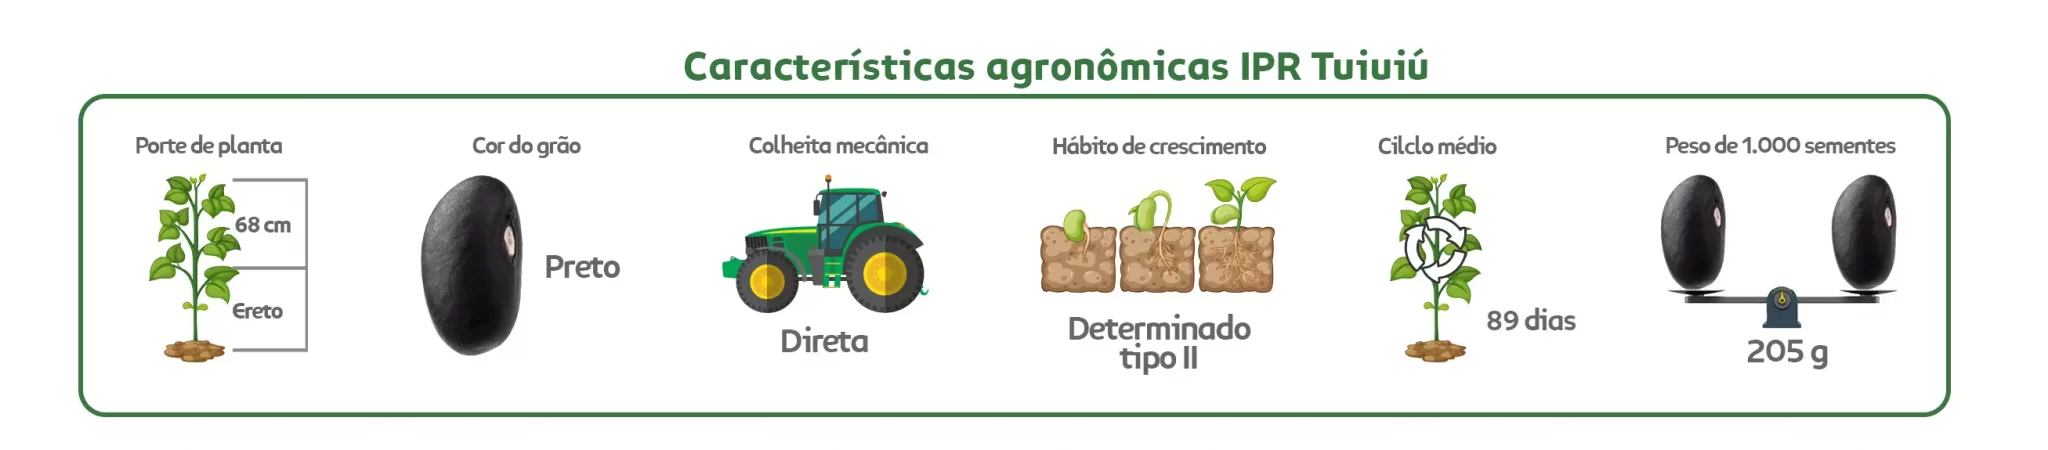 Características agronômicas Feijão Preto Tuiui